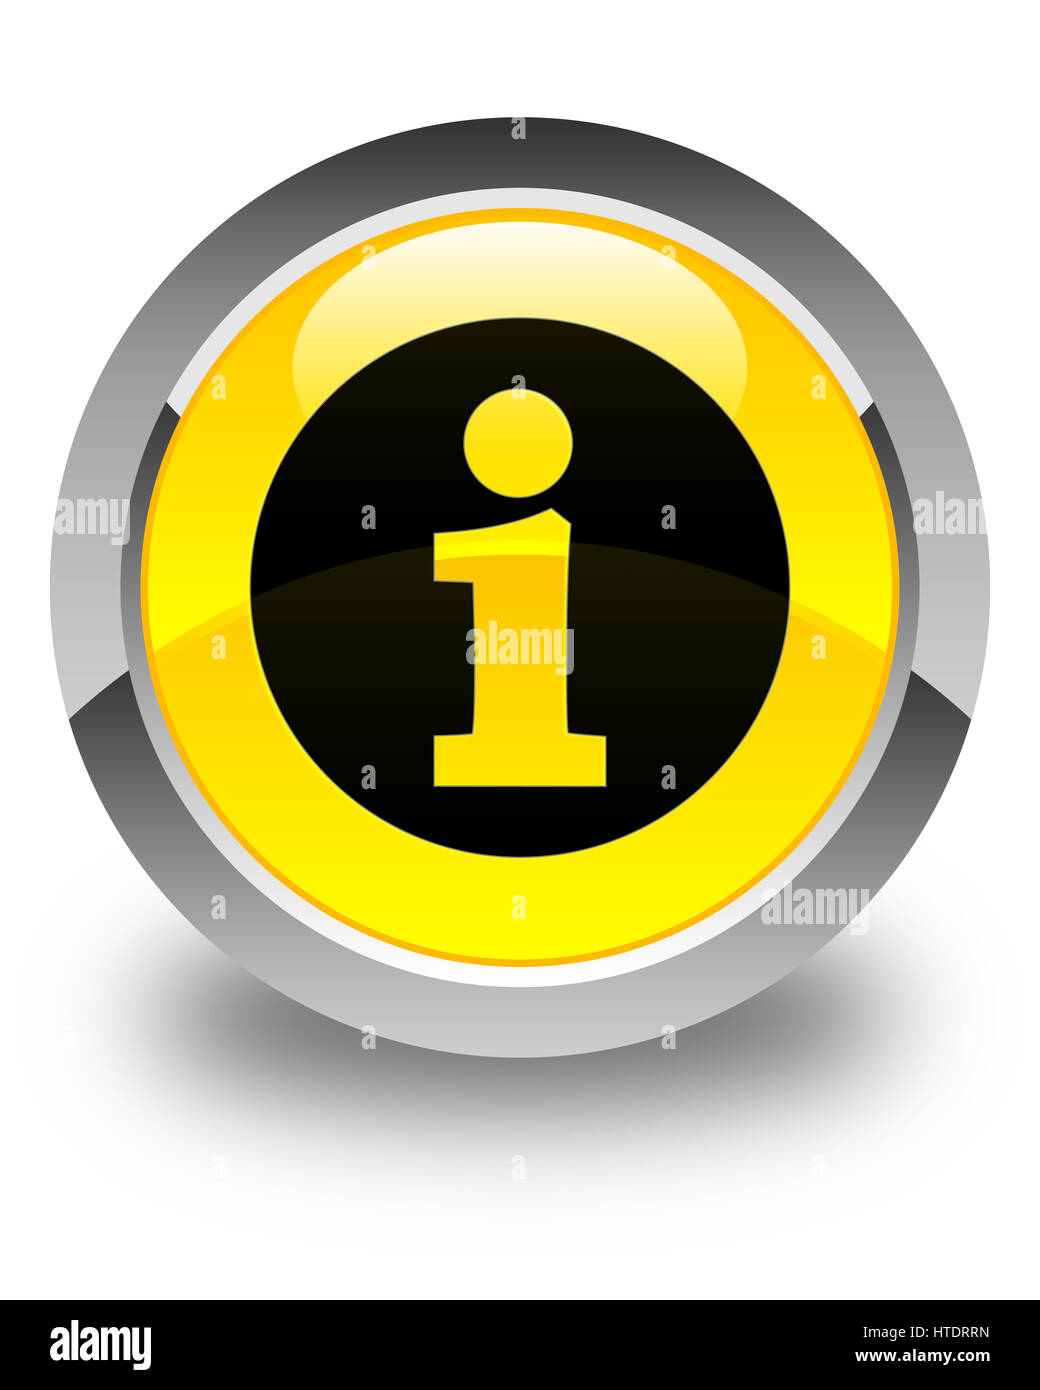 L'icône Infos isolé sur bouton rond jaune brillant abstract illustration Banque D'Images